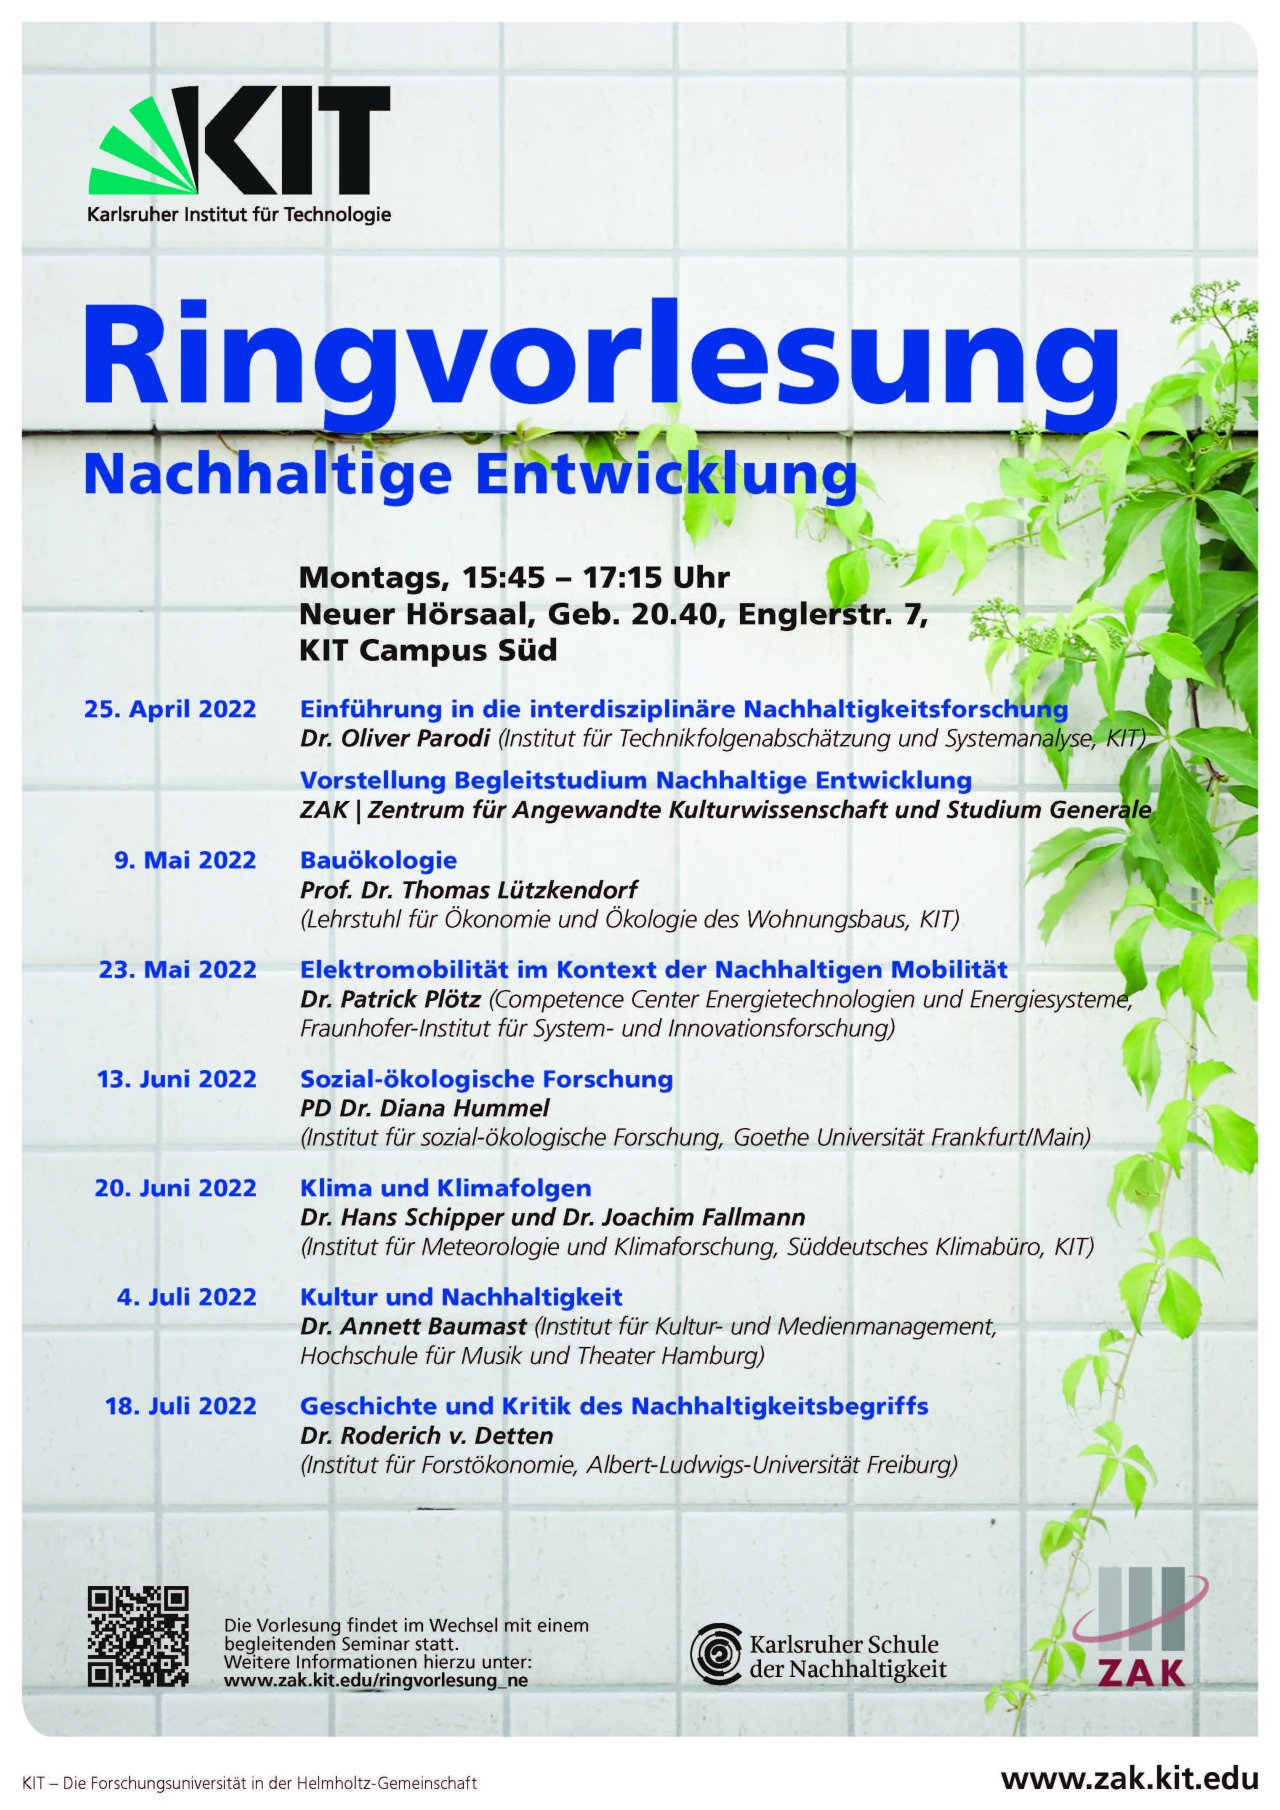 Plakat der Ringvorlesung Nachhaltige Entwicklung am KIT vom Sommersemester 2022 mit sieben Vorträgen über Nachhaltigkeitsforschung, Klima und Klimafolgen bis Kultur und Nachhaltigkeit 